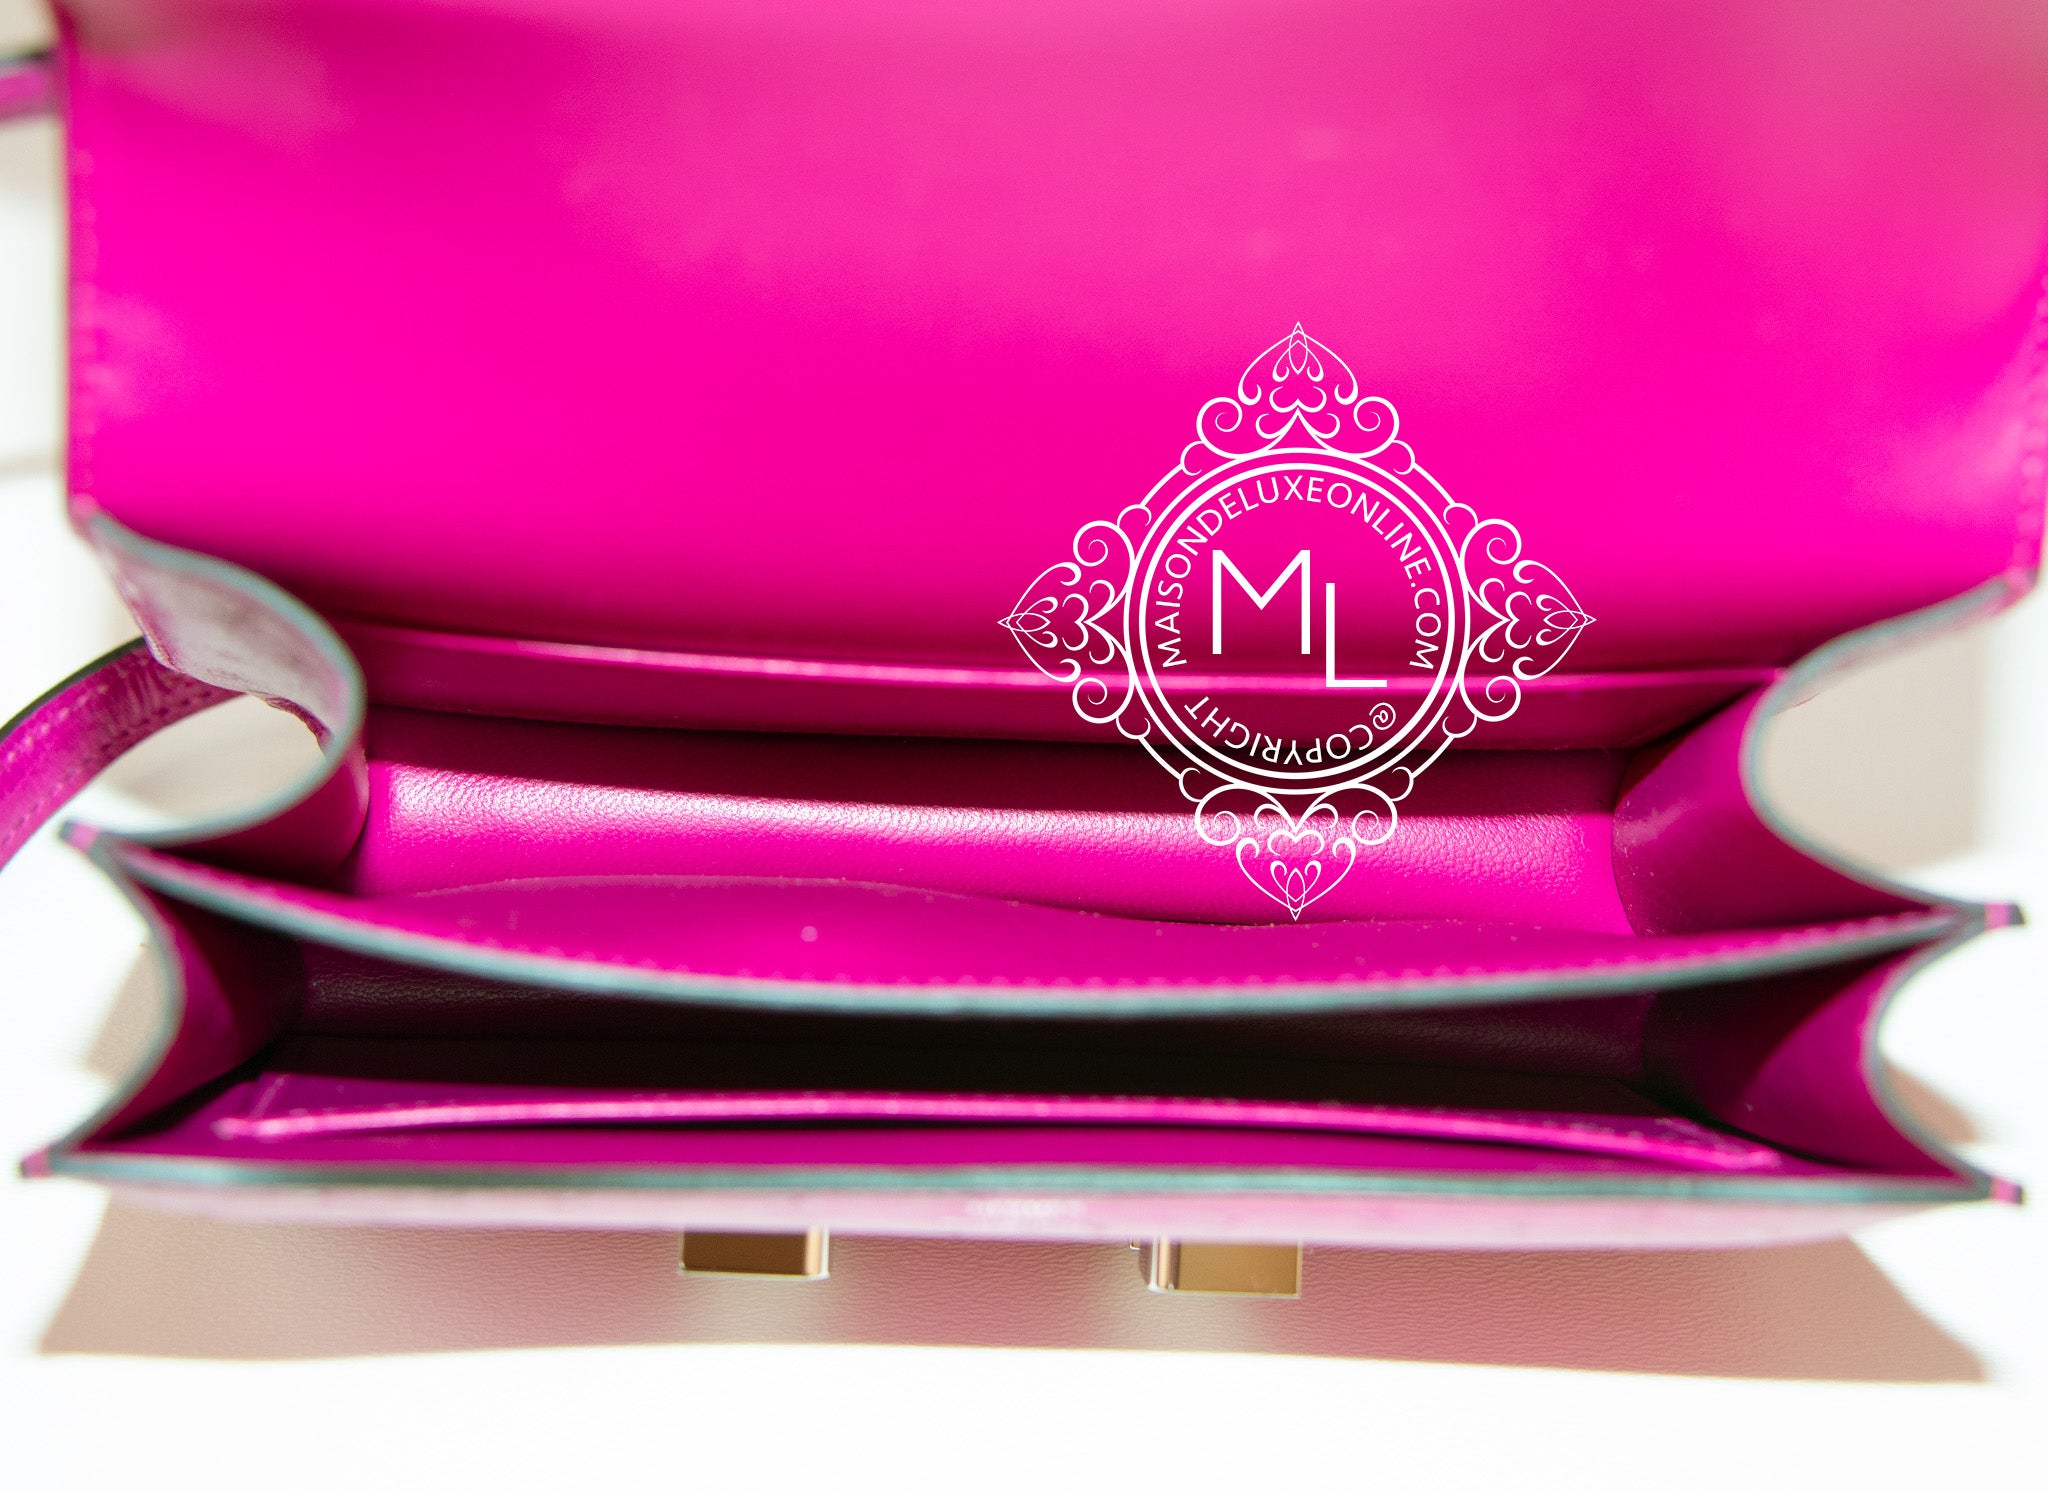 Hermes Pink Chevre de Coromandel Leather Mini Constance III Shoulder Bag